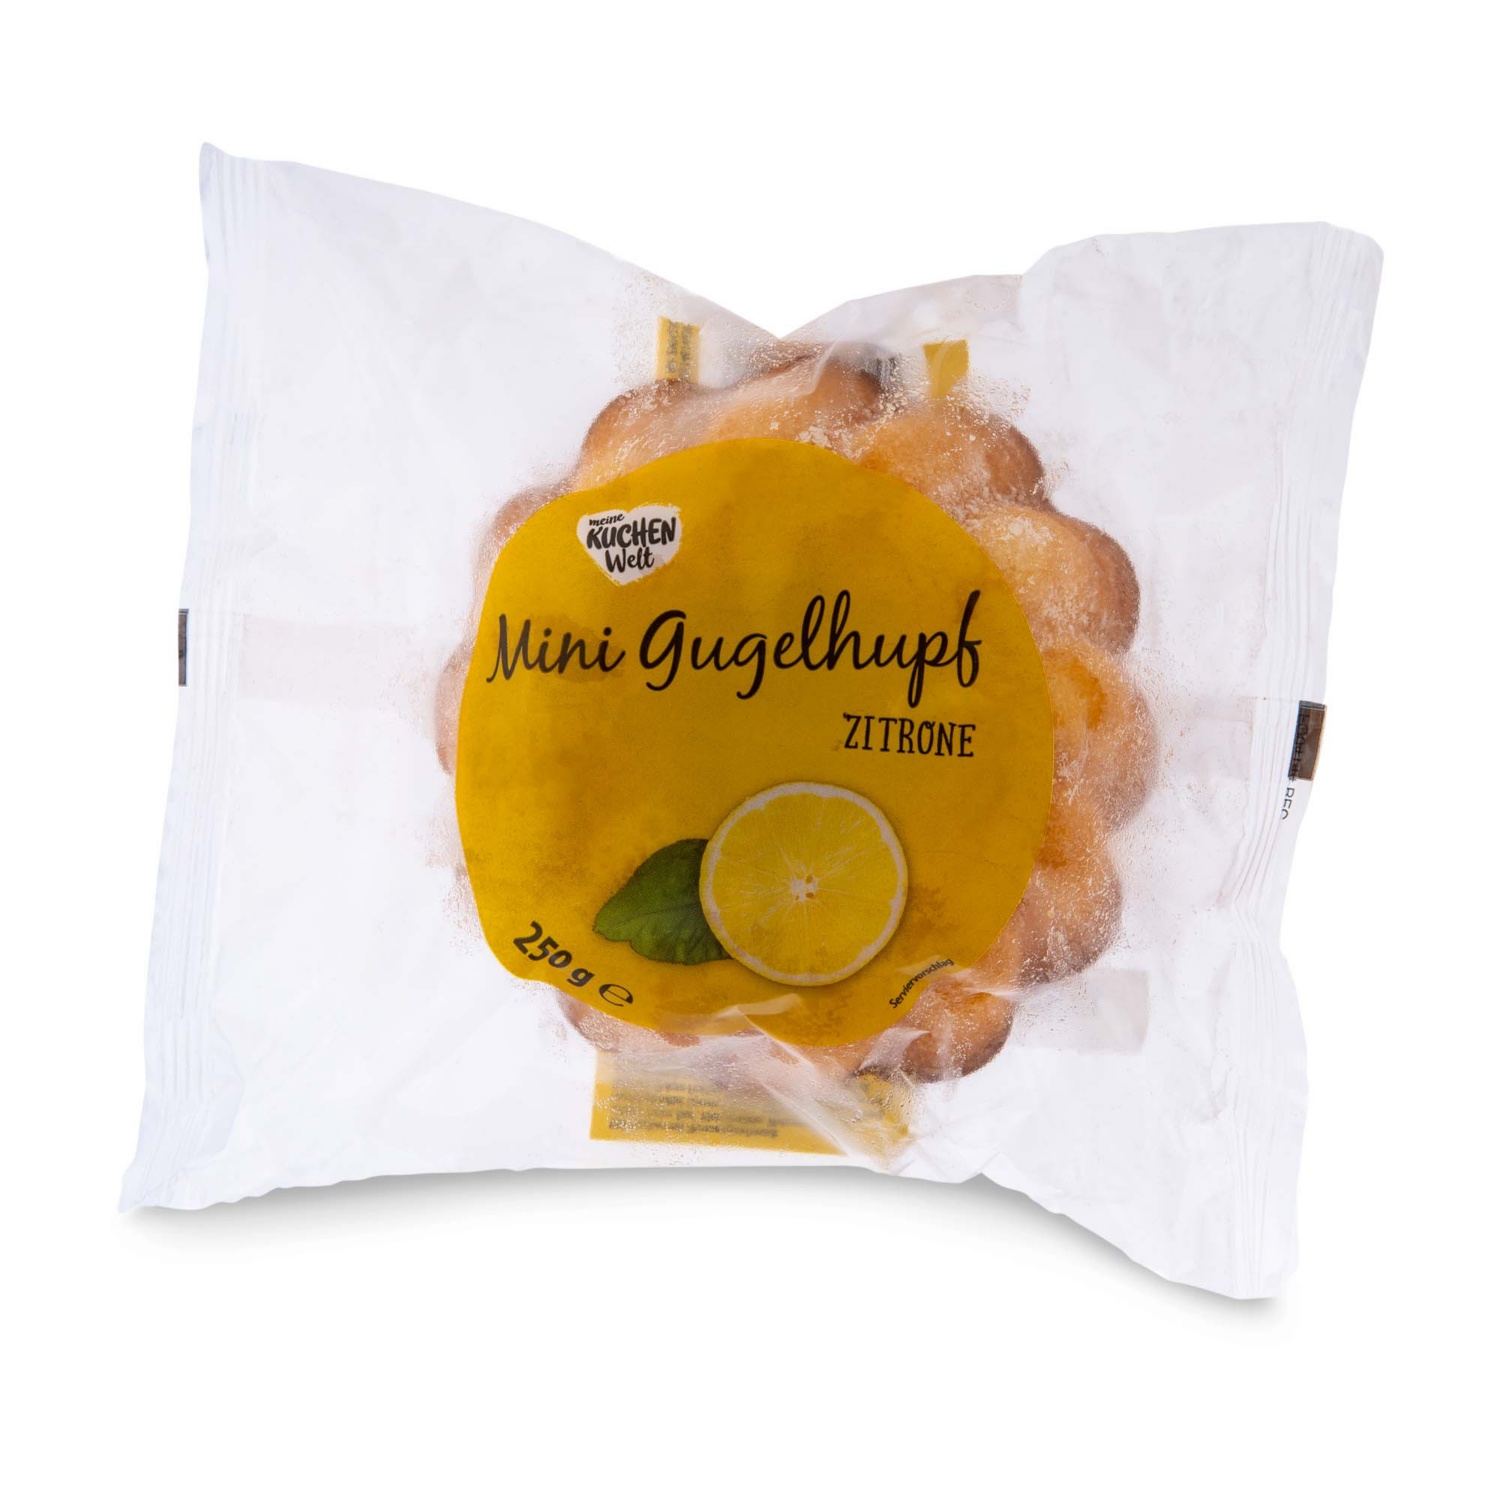 MEINE KUCHENWELT Mini Gugelhupf, Zitrone